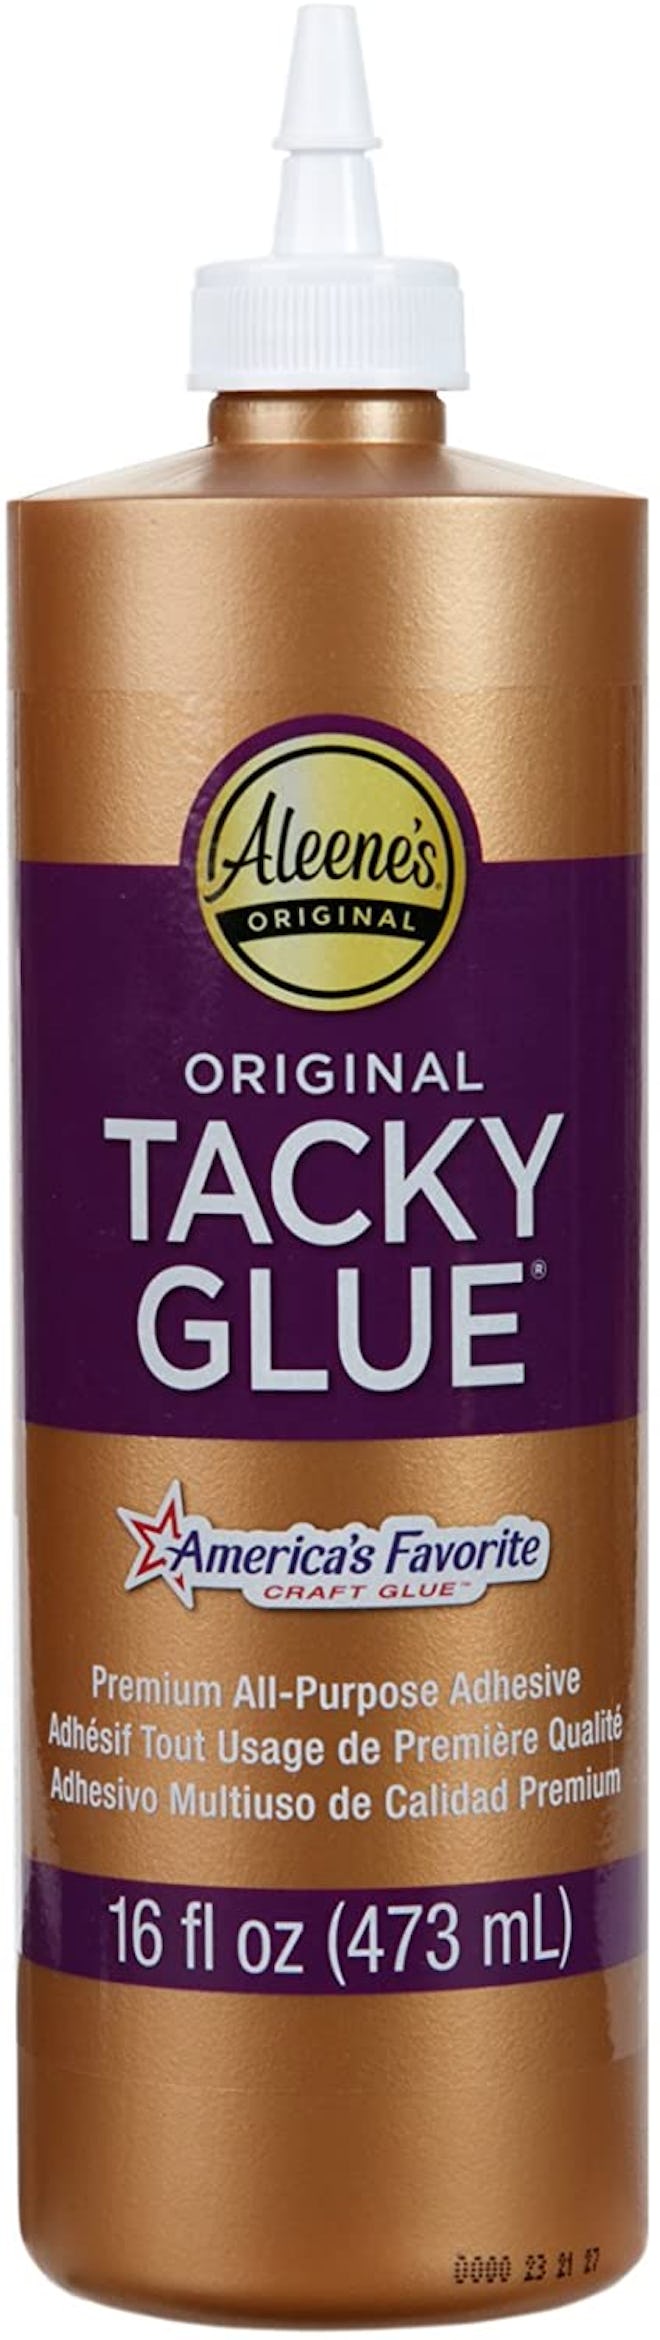 Aleene’s Tacky Glue